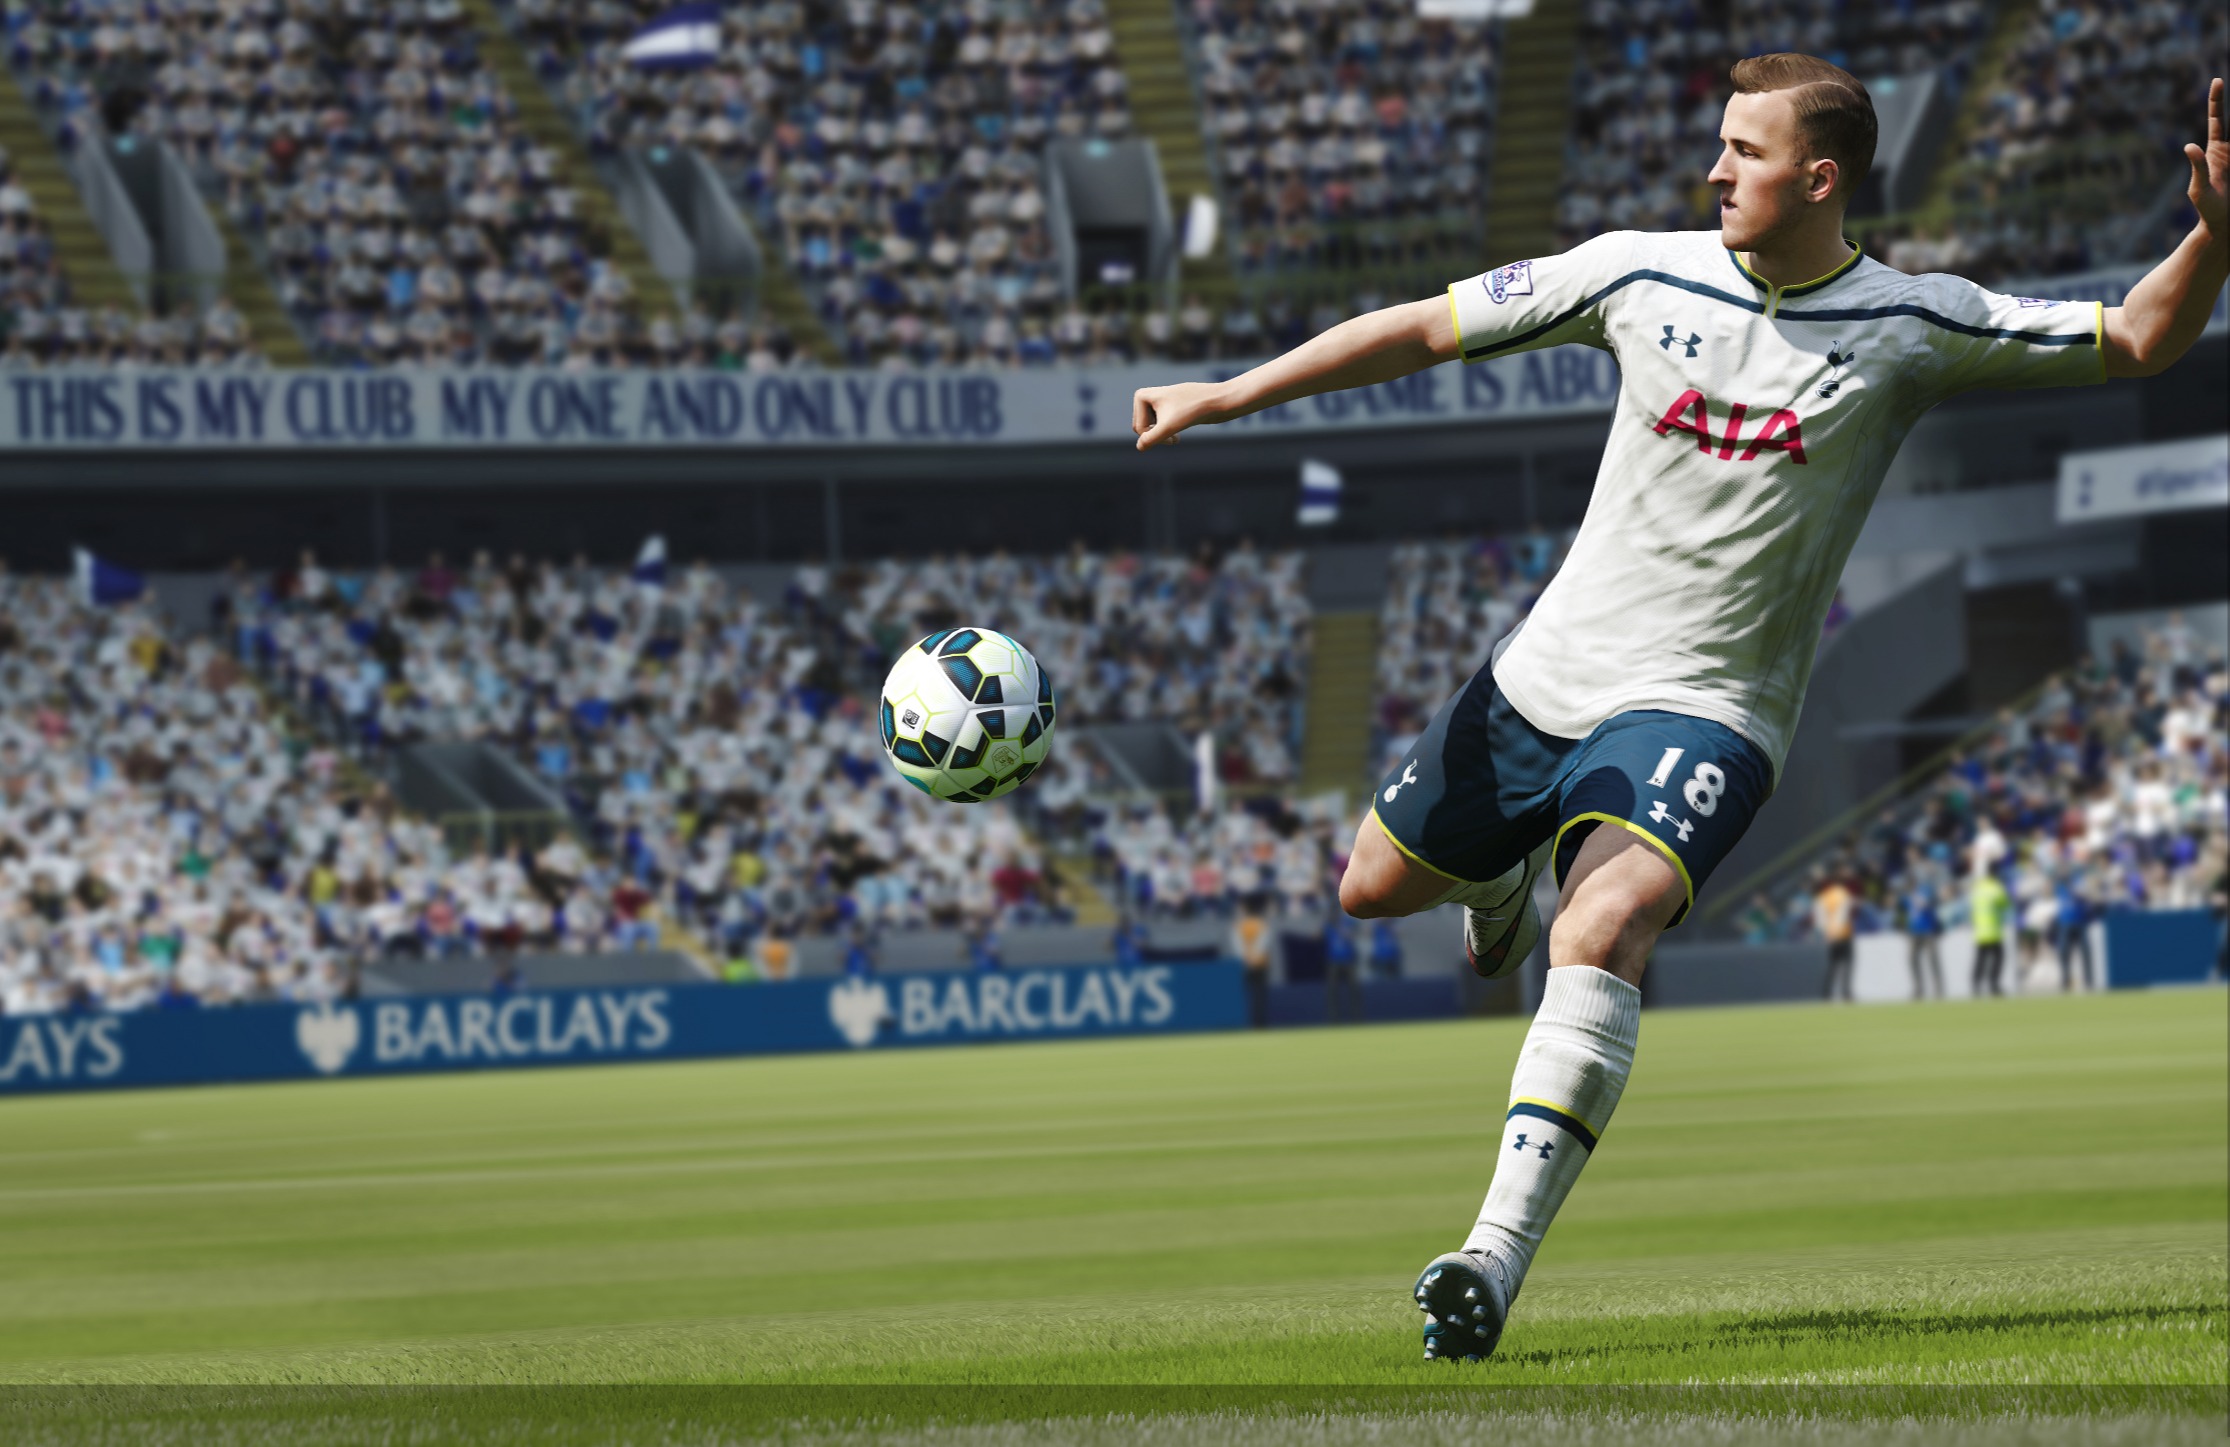 ‘FIFA 17’ improves upon its predecessor